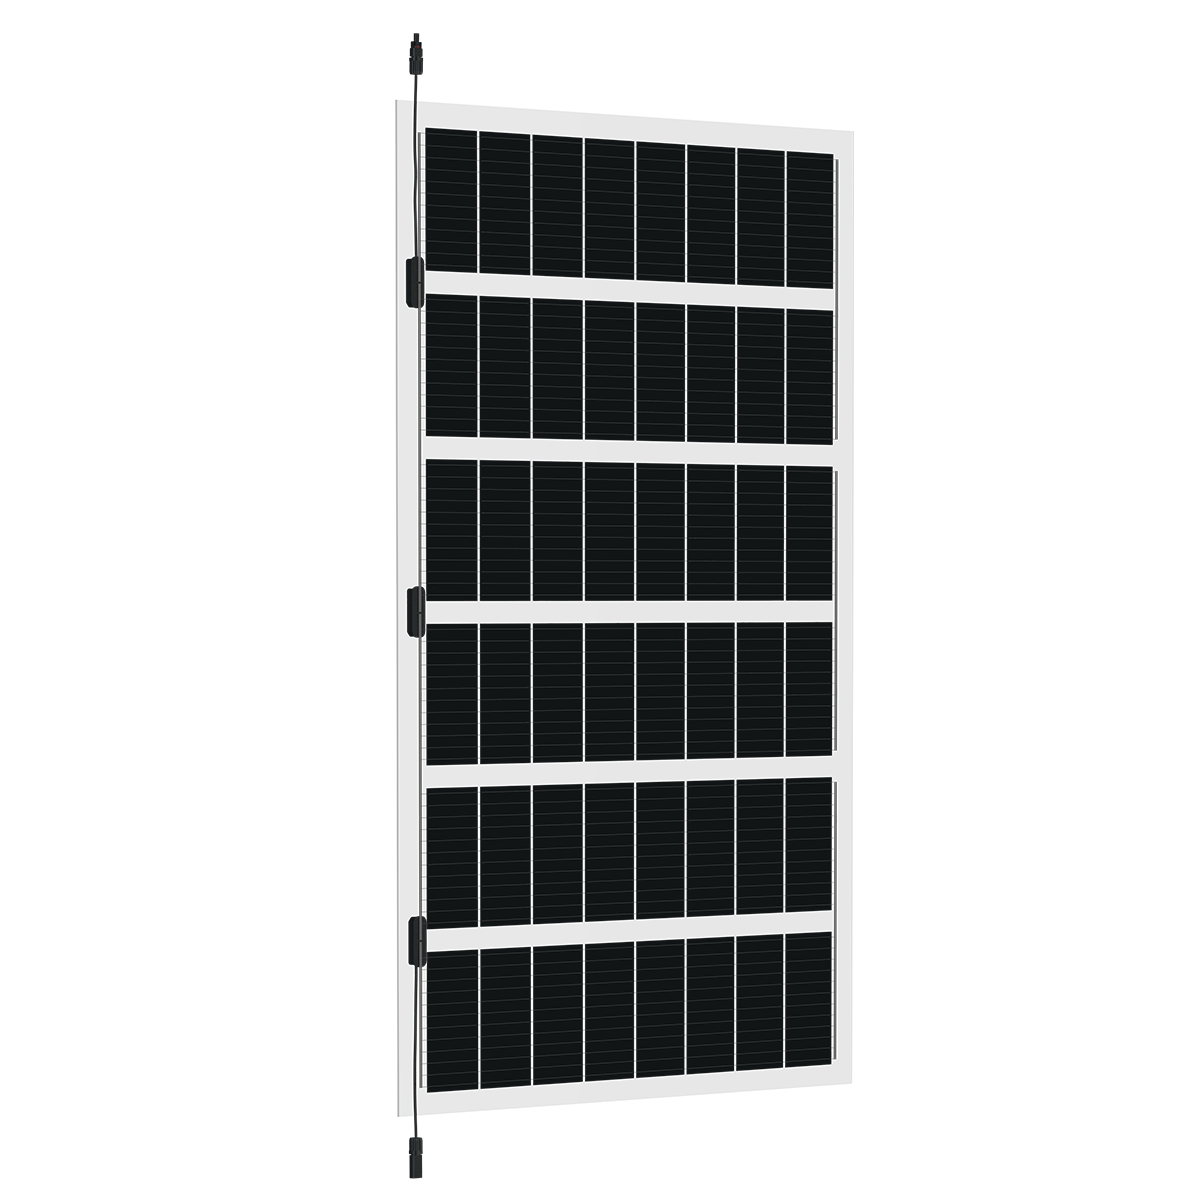 TommaTech 240Wp 48PM G2G 1.75m Terrace Solar Panel